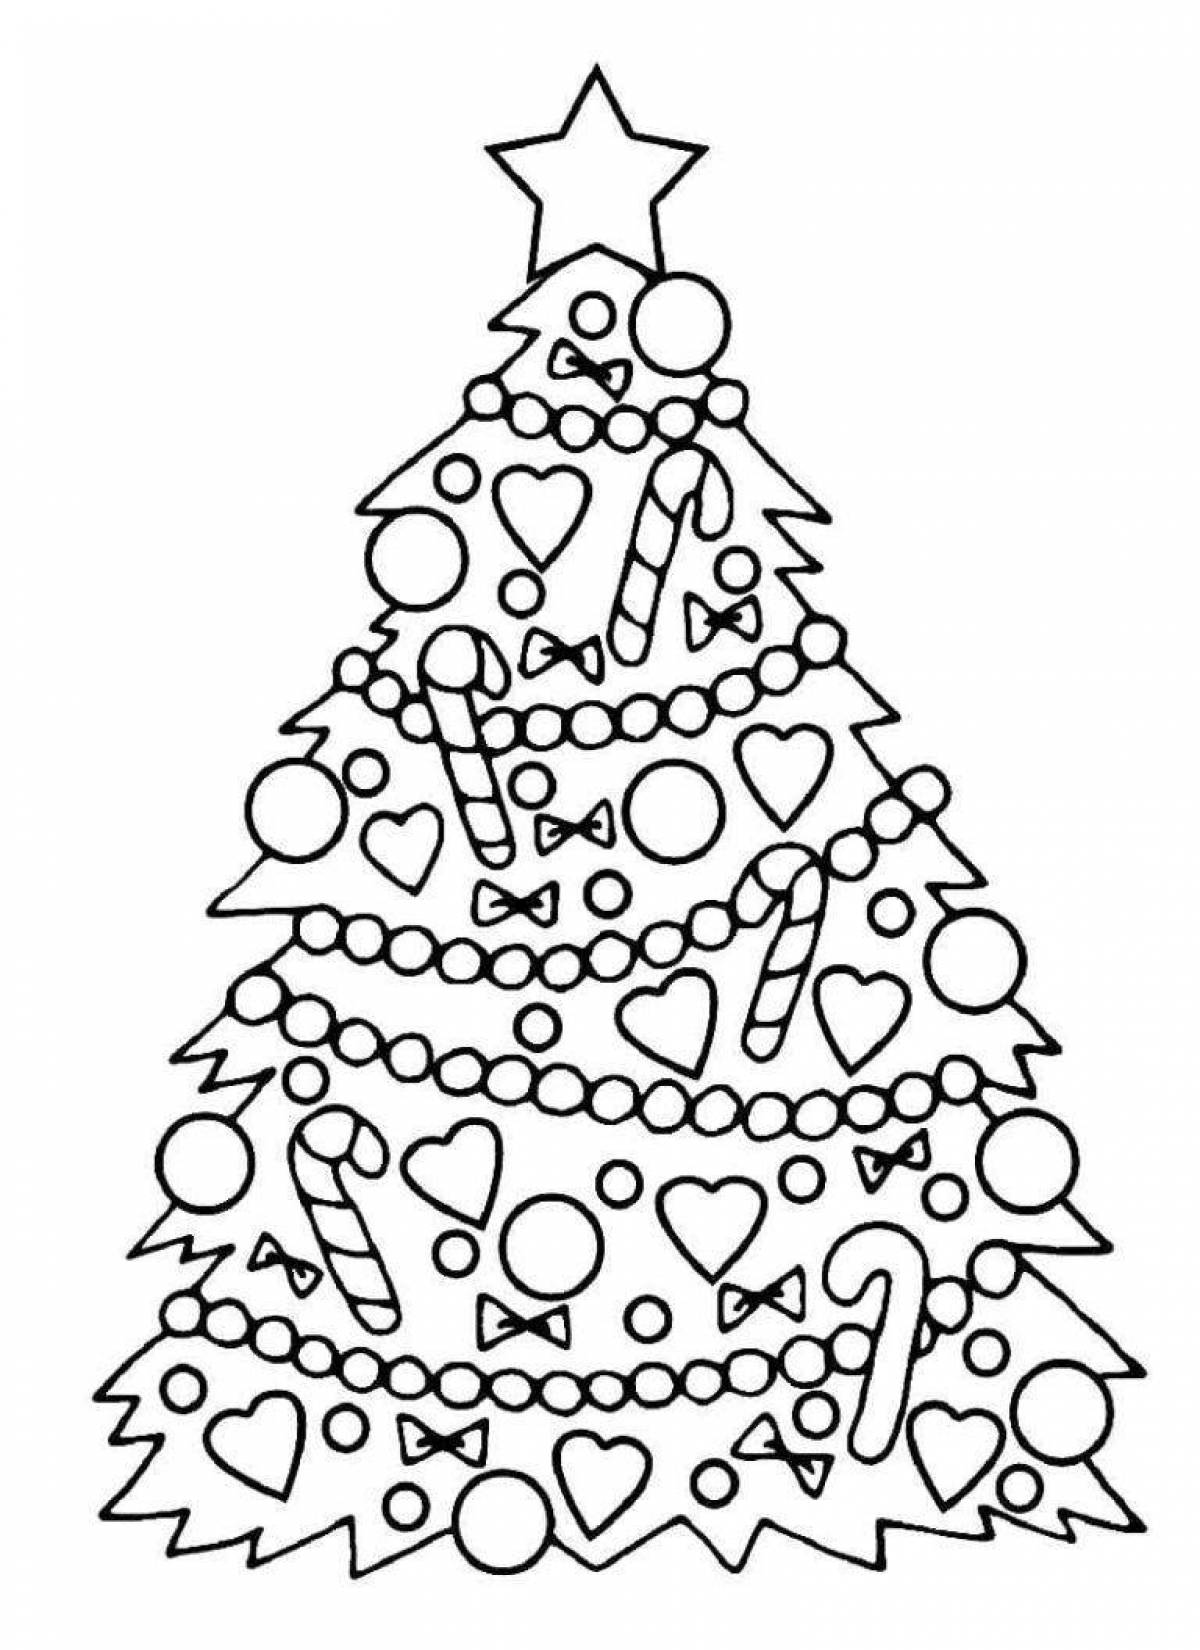 Раскраска «сверкающая новогодняя елка» для детей 4-5 лет